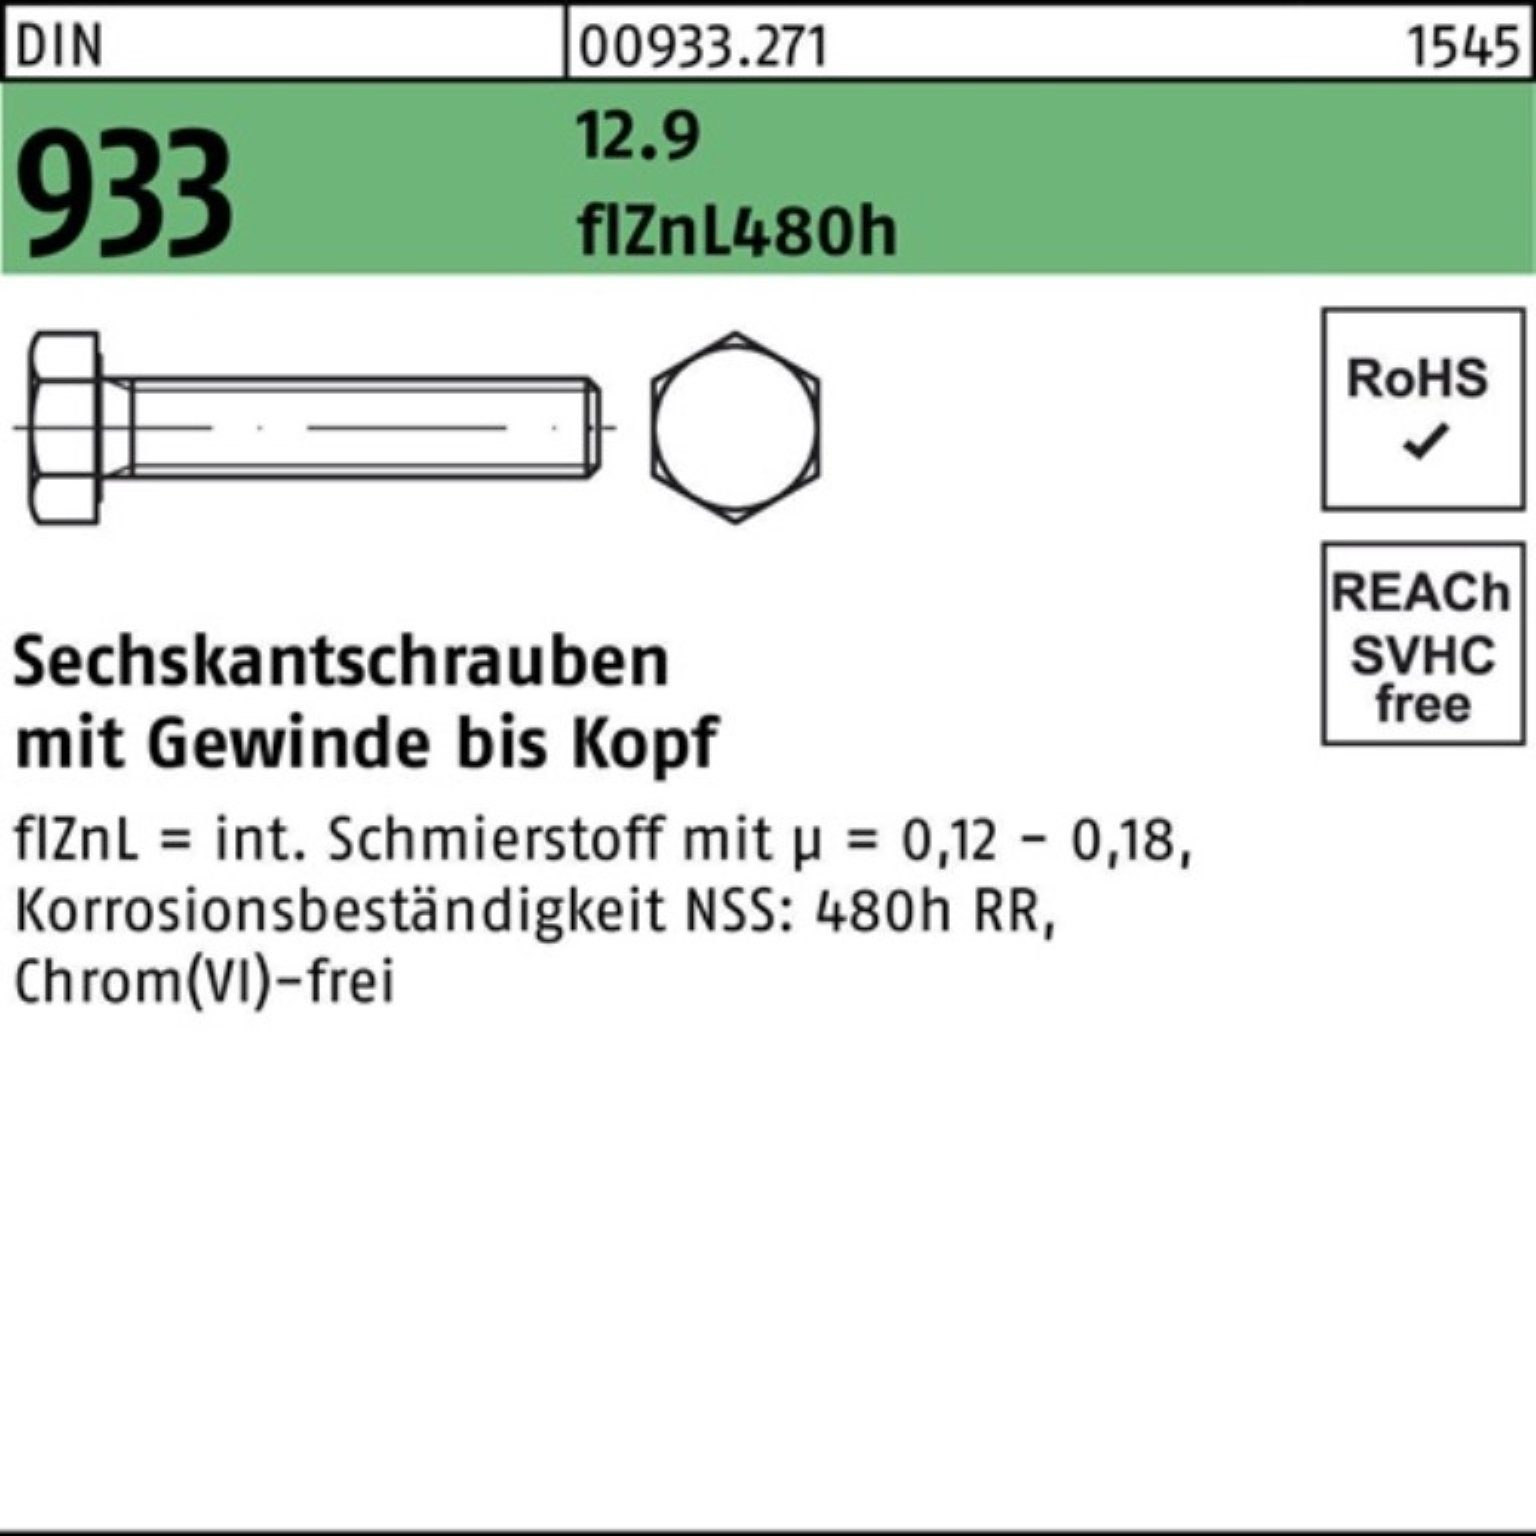 Reyher Sechskantschraube 500er Pack Sechskantschraube DIN 933 VG M6x 25 12.9 flZnL 480h zinklam